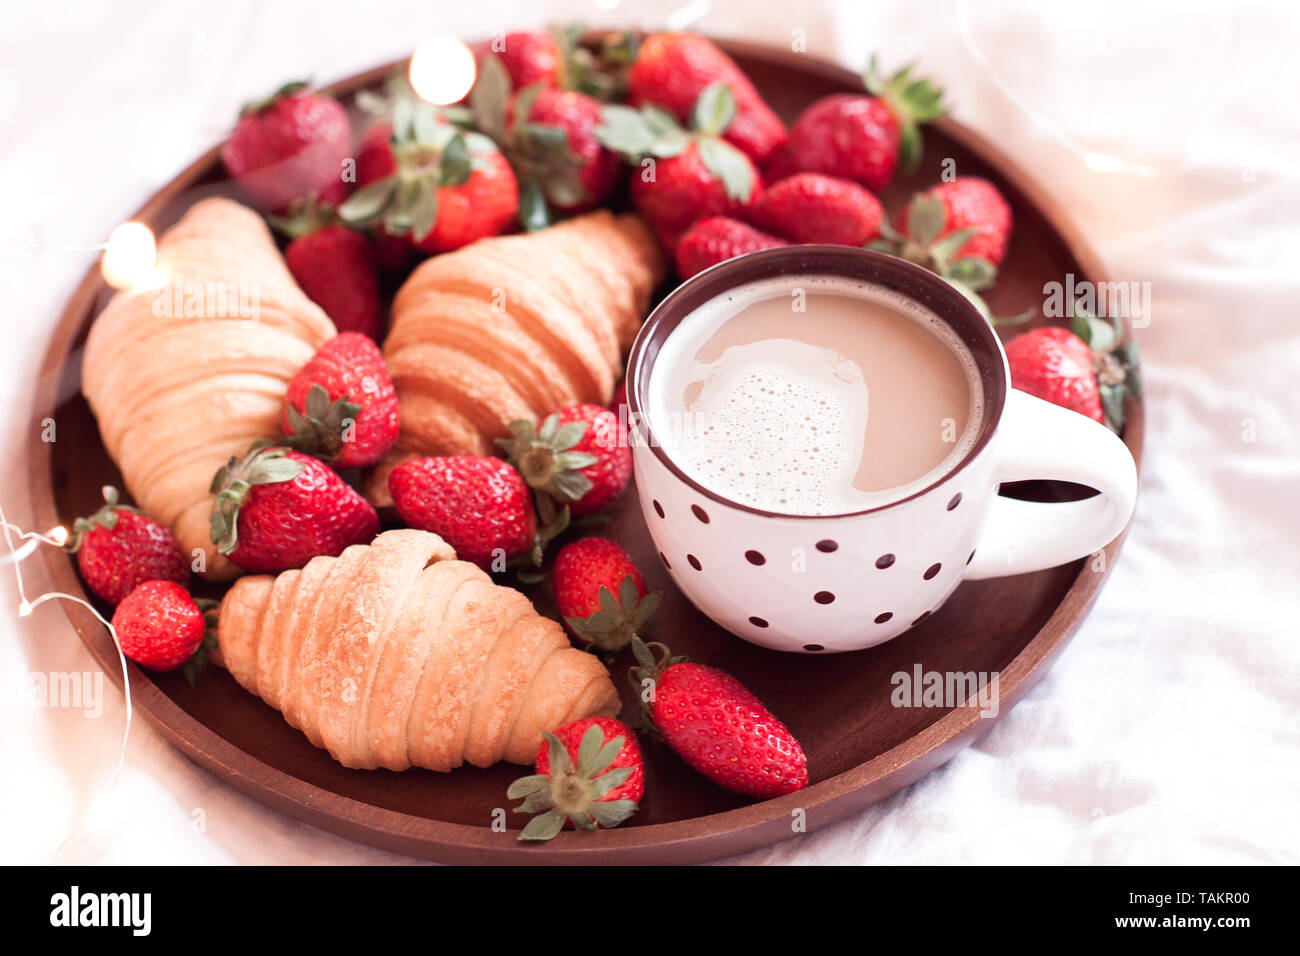 Aspects du mois d'Avril - Page 13 Delicieux-petit-dejeuner-avec-cafe-et-gateaux-aux-fraises-libre-l-alimentation-saine-takr00